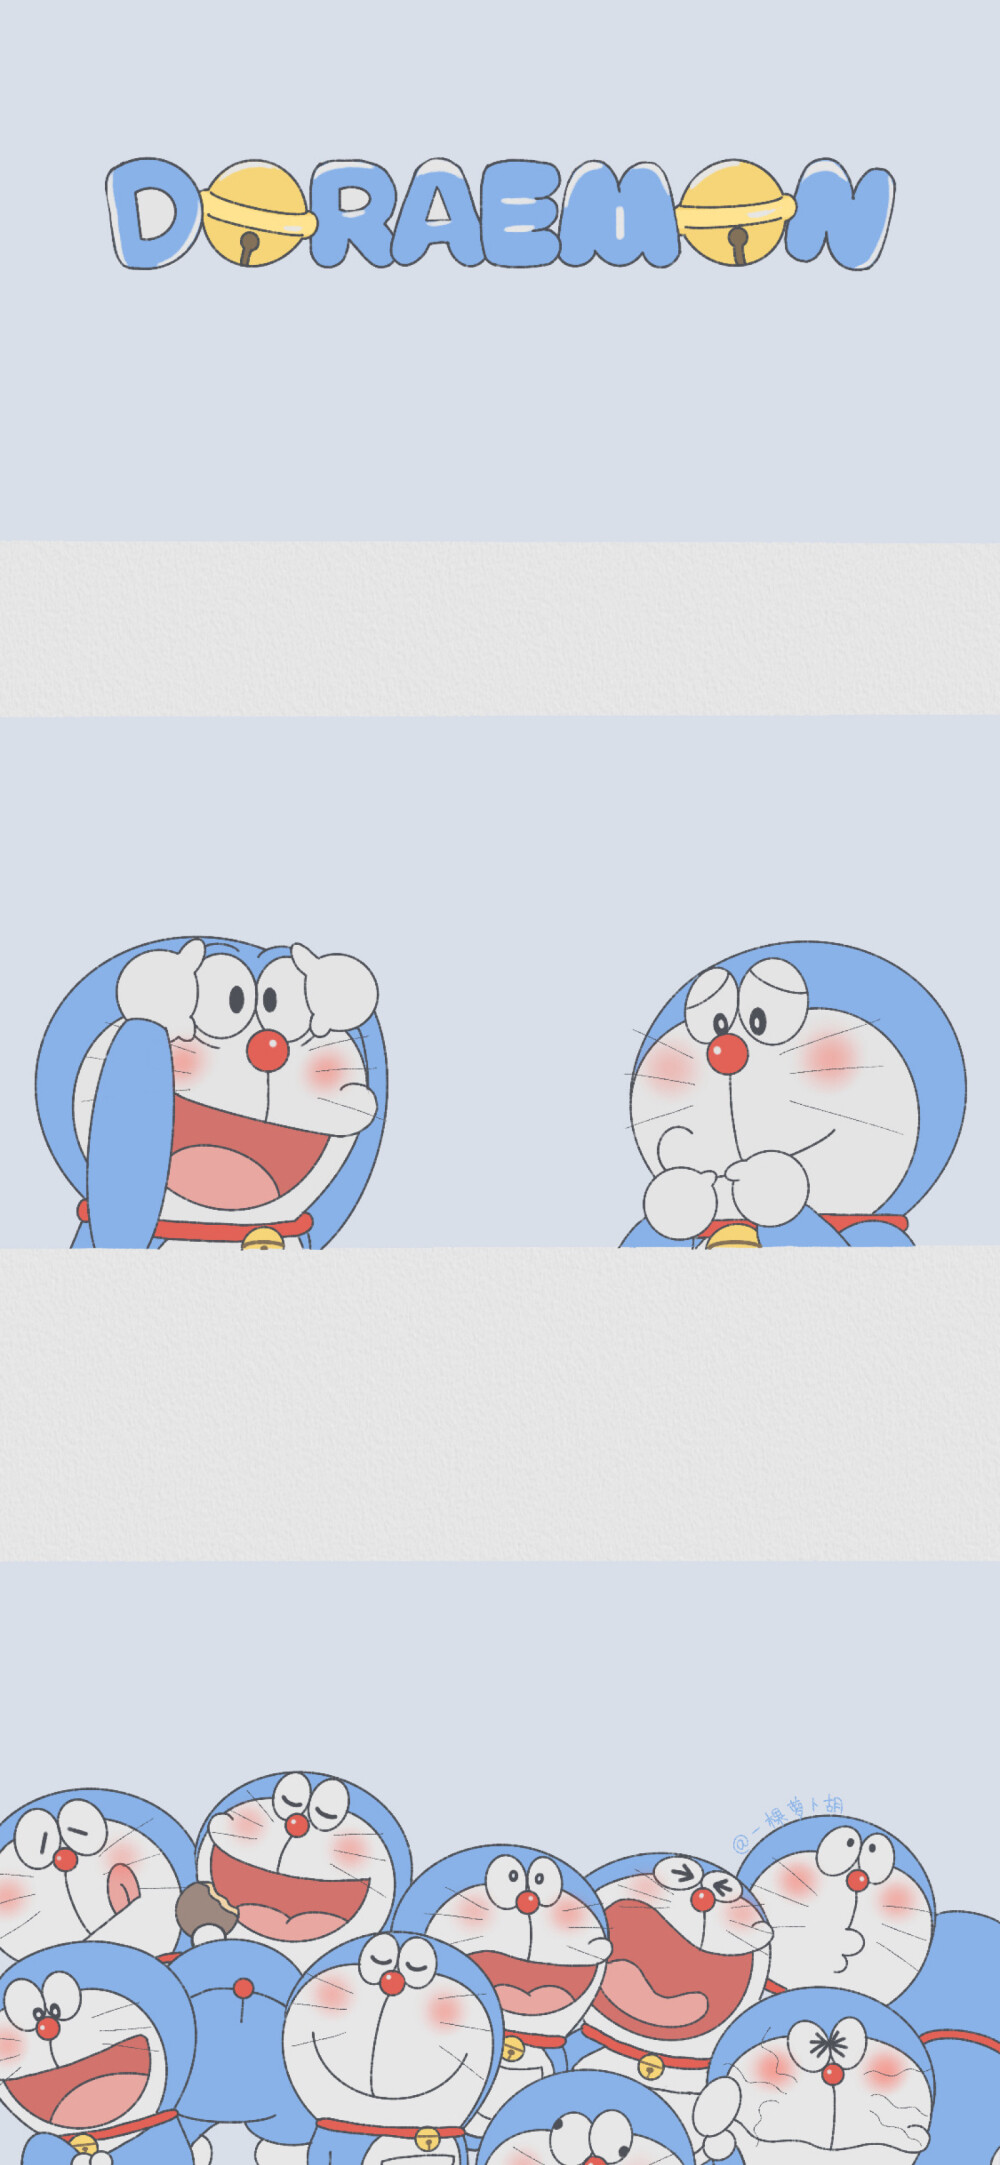 机器猫插画 素材 ins 韩系 可爱 简约 手绘 动漫 锁屏 屏保 卡通 背景